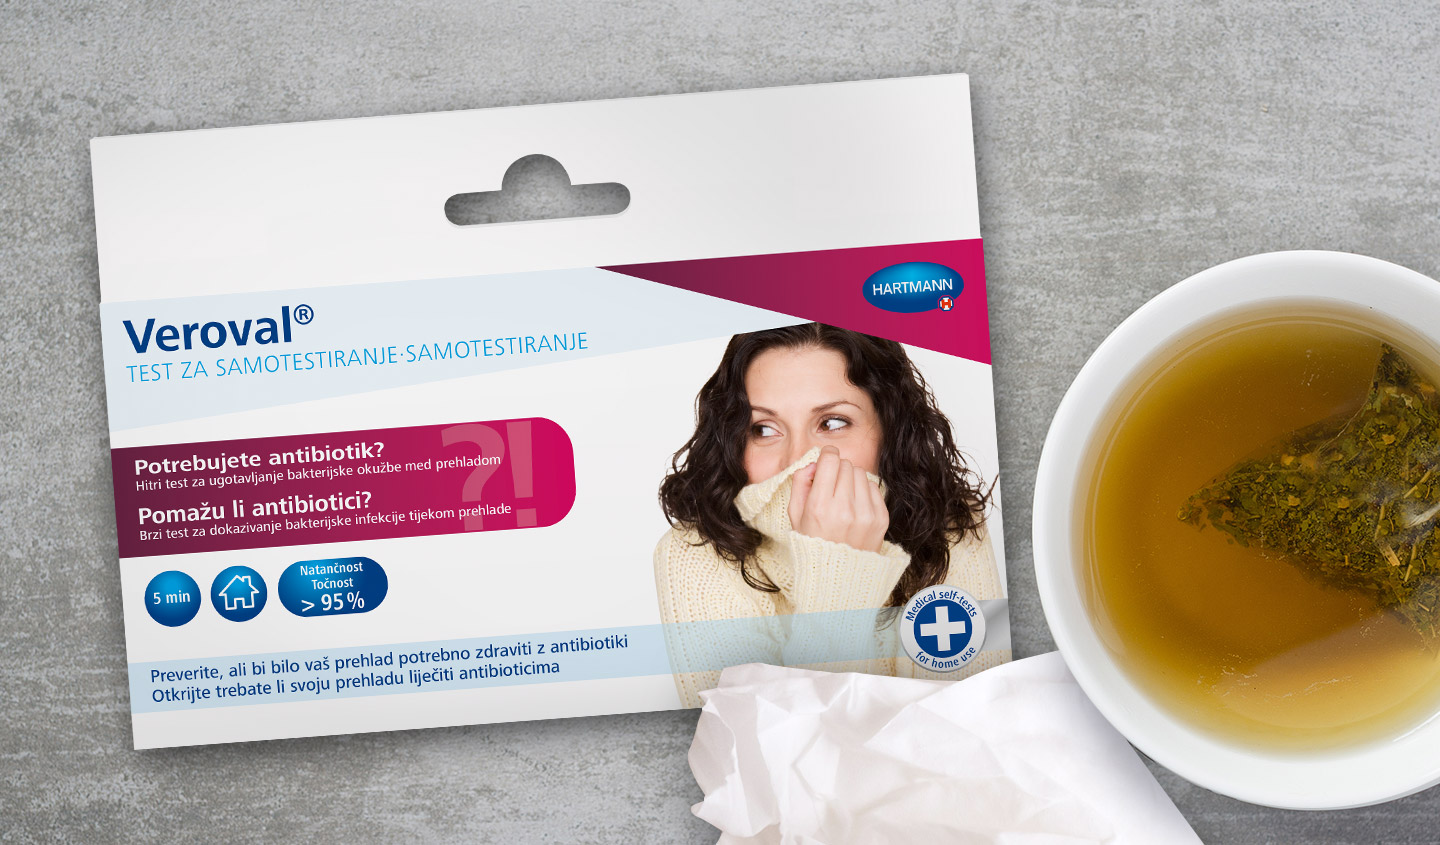 Die Verpackung eines Veroval Selbst-Tests "Helfen Antibiotika" liegt neben einer Tasse Tee